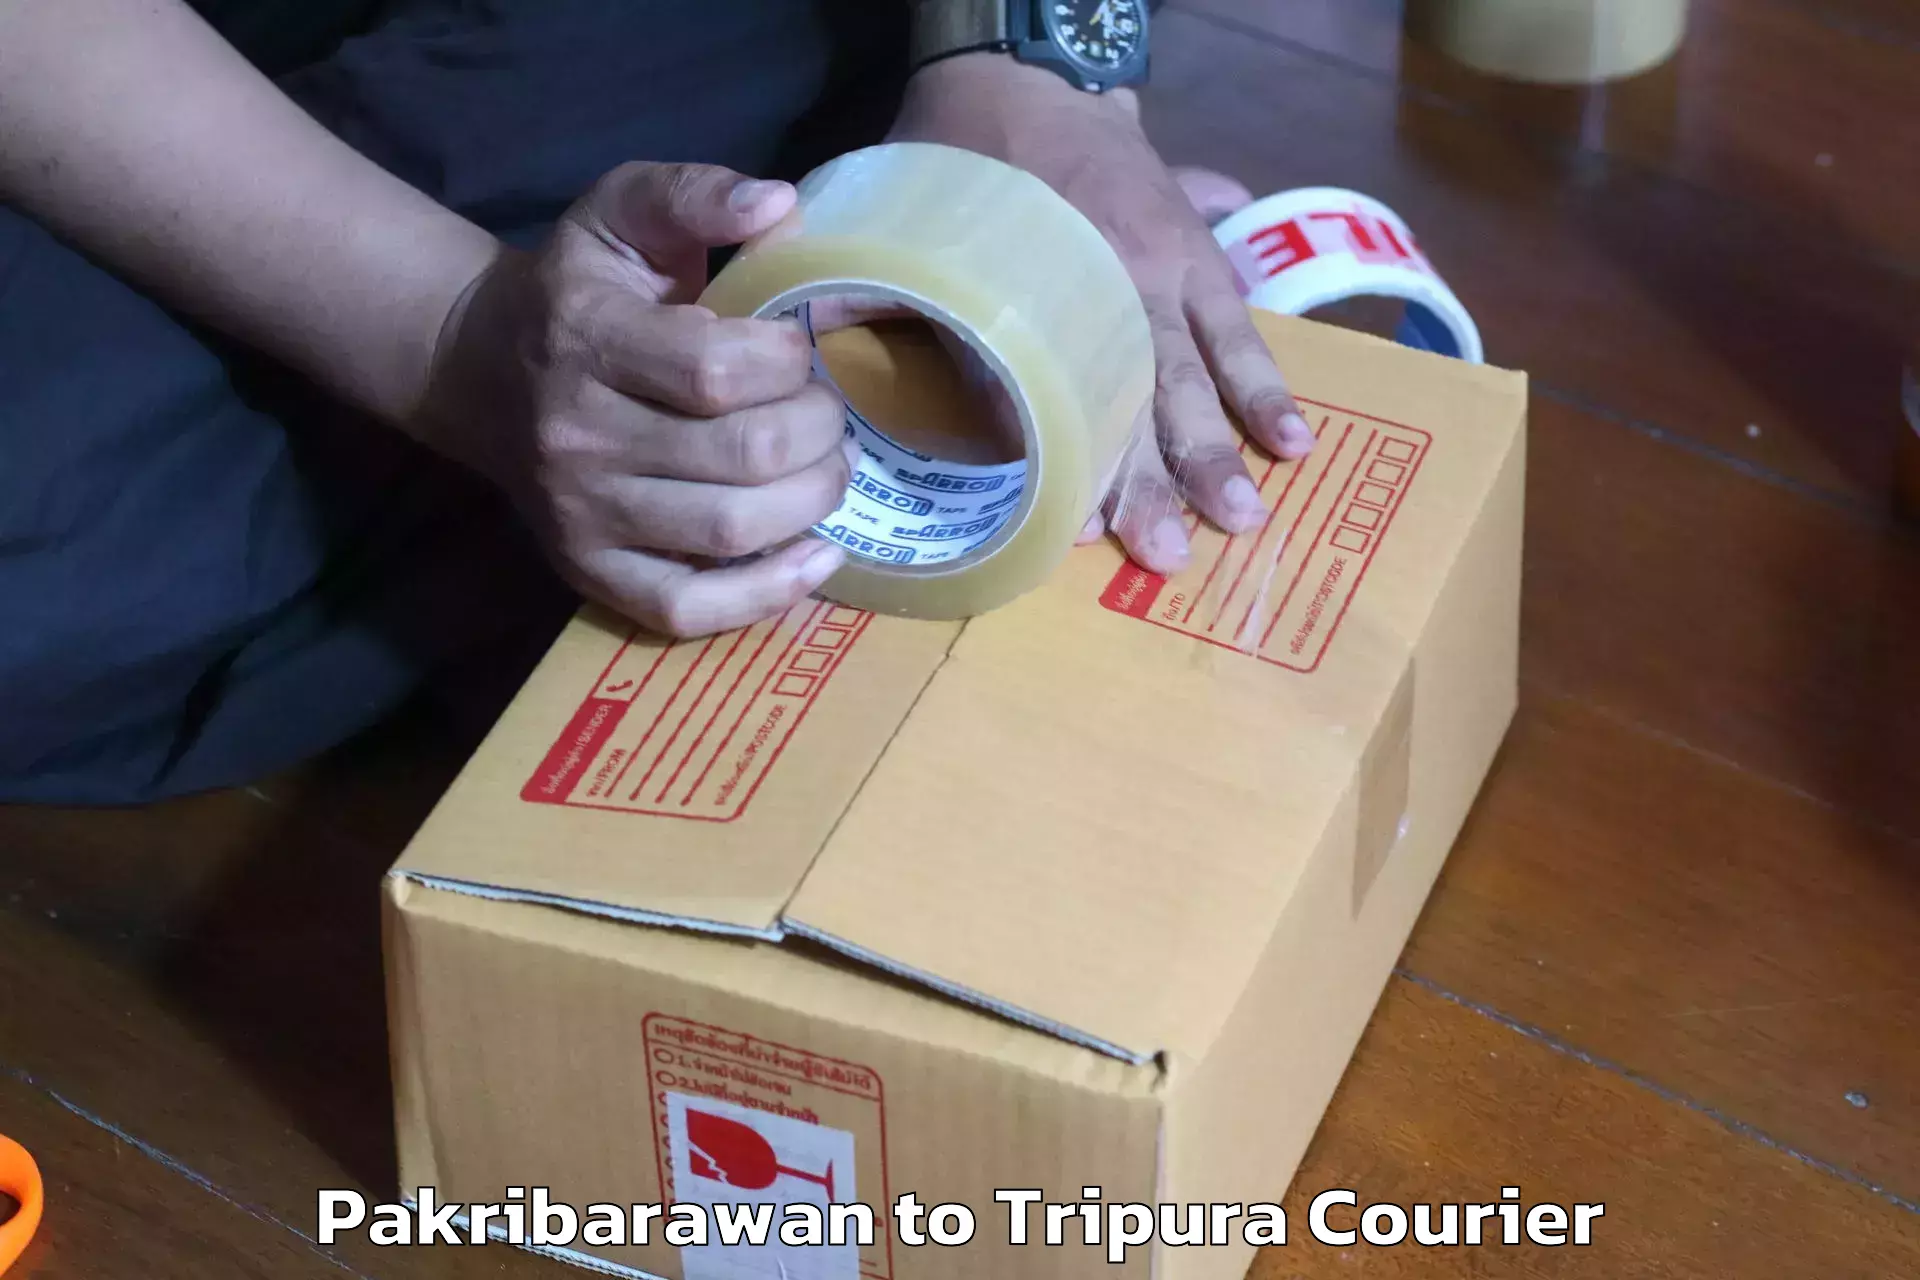 Full-service movers Pakribarawan to Tripura